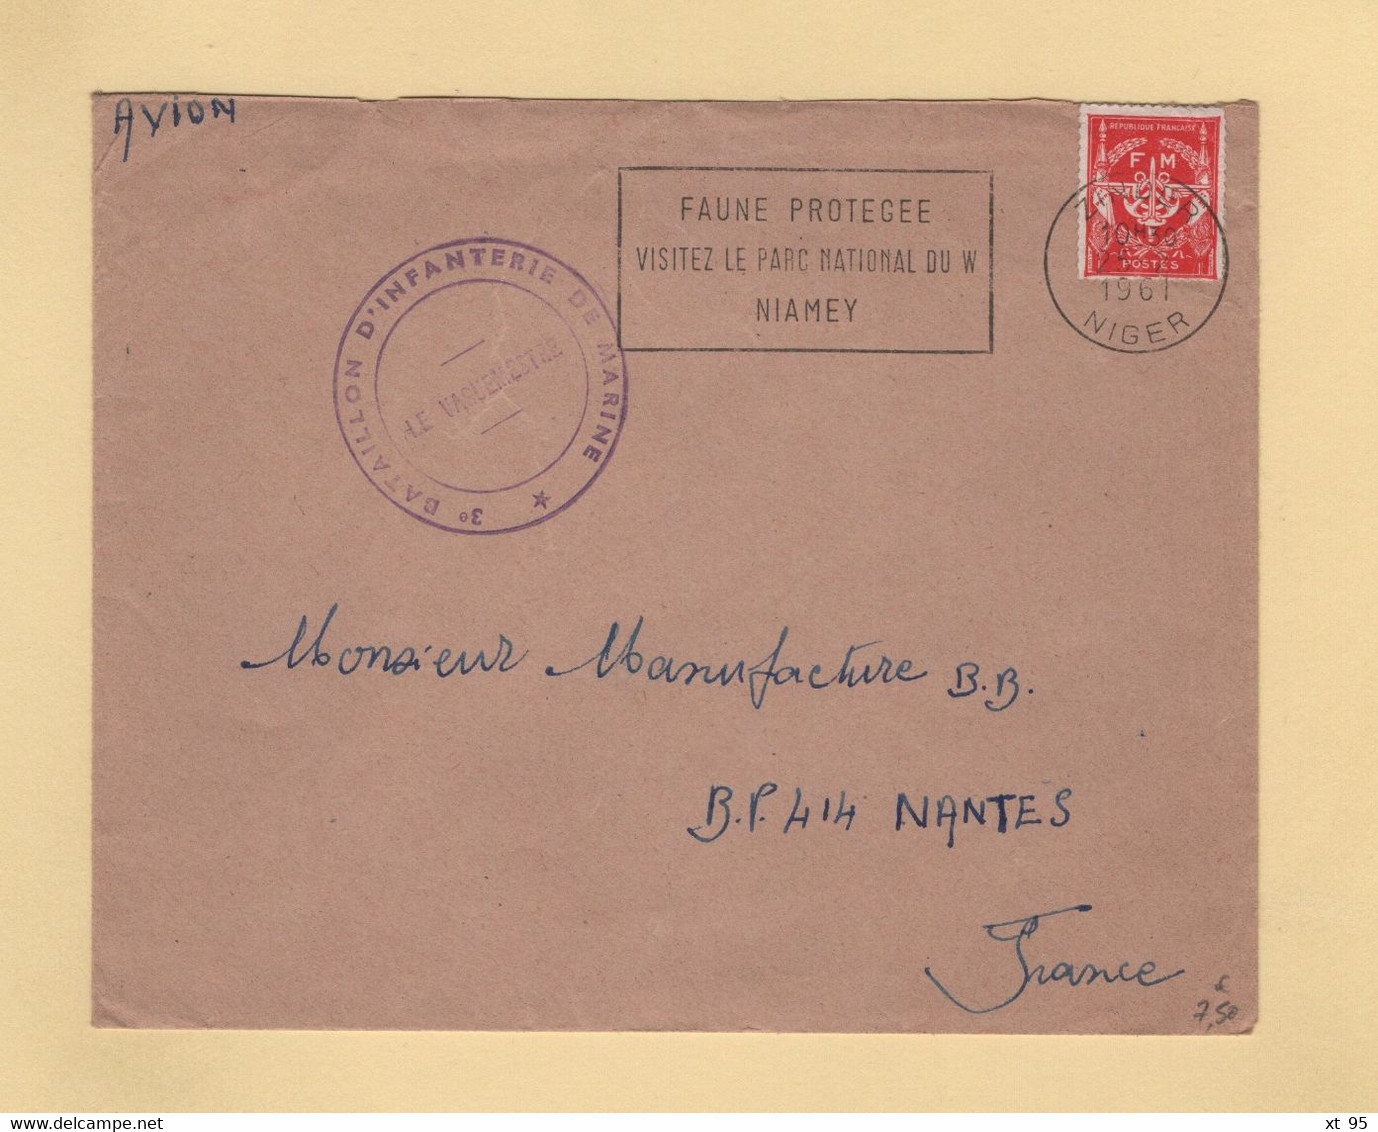 Timbre FM - Niger - Zinger - 1961 - 3e Bataillon D Infanterie De Marine - Military Postage Stamps